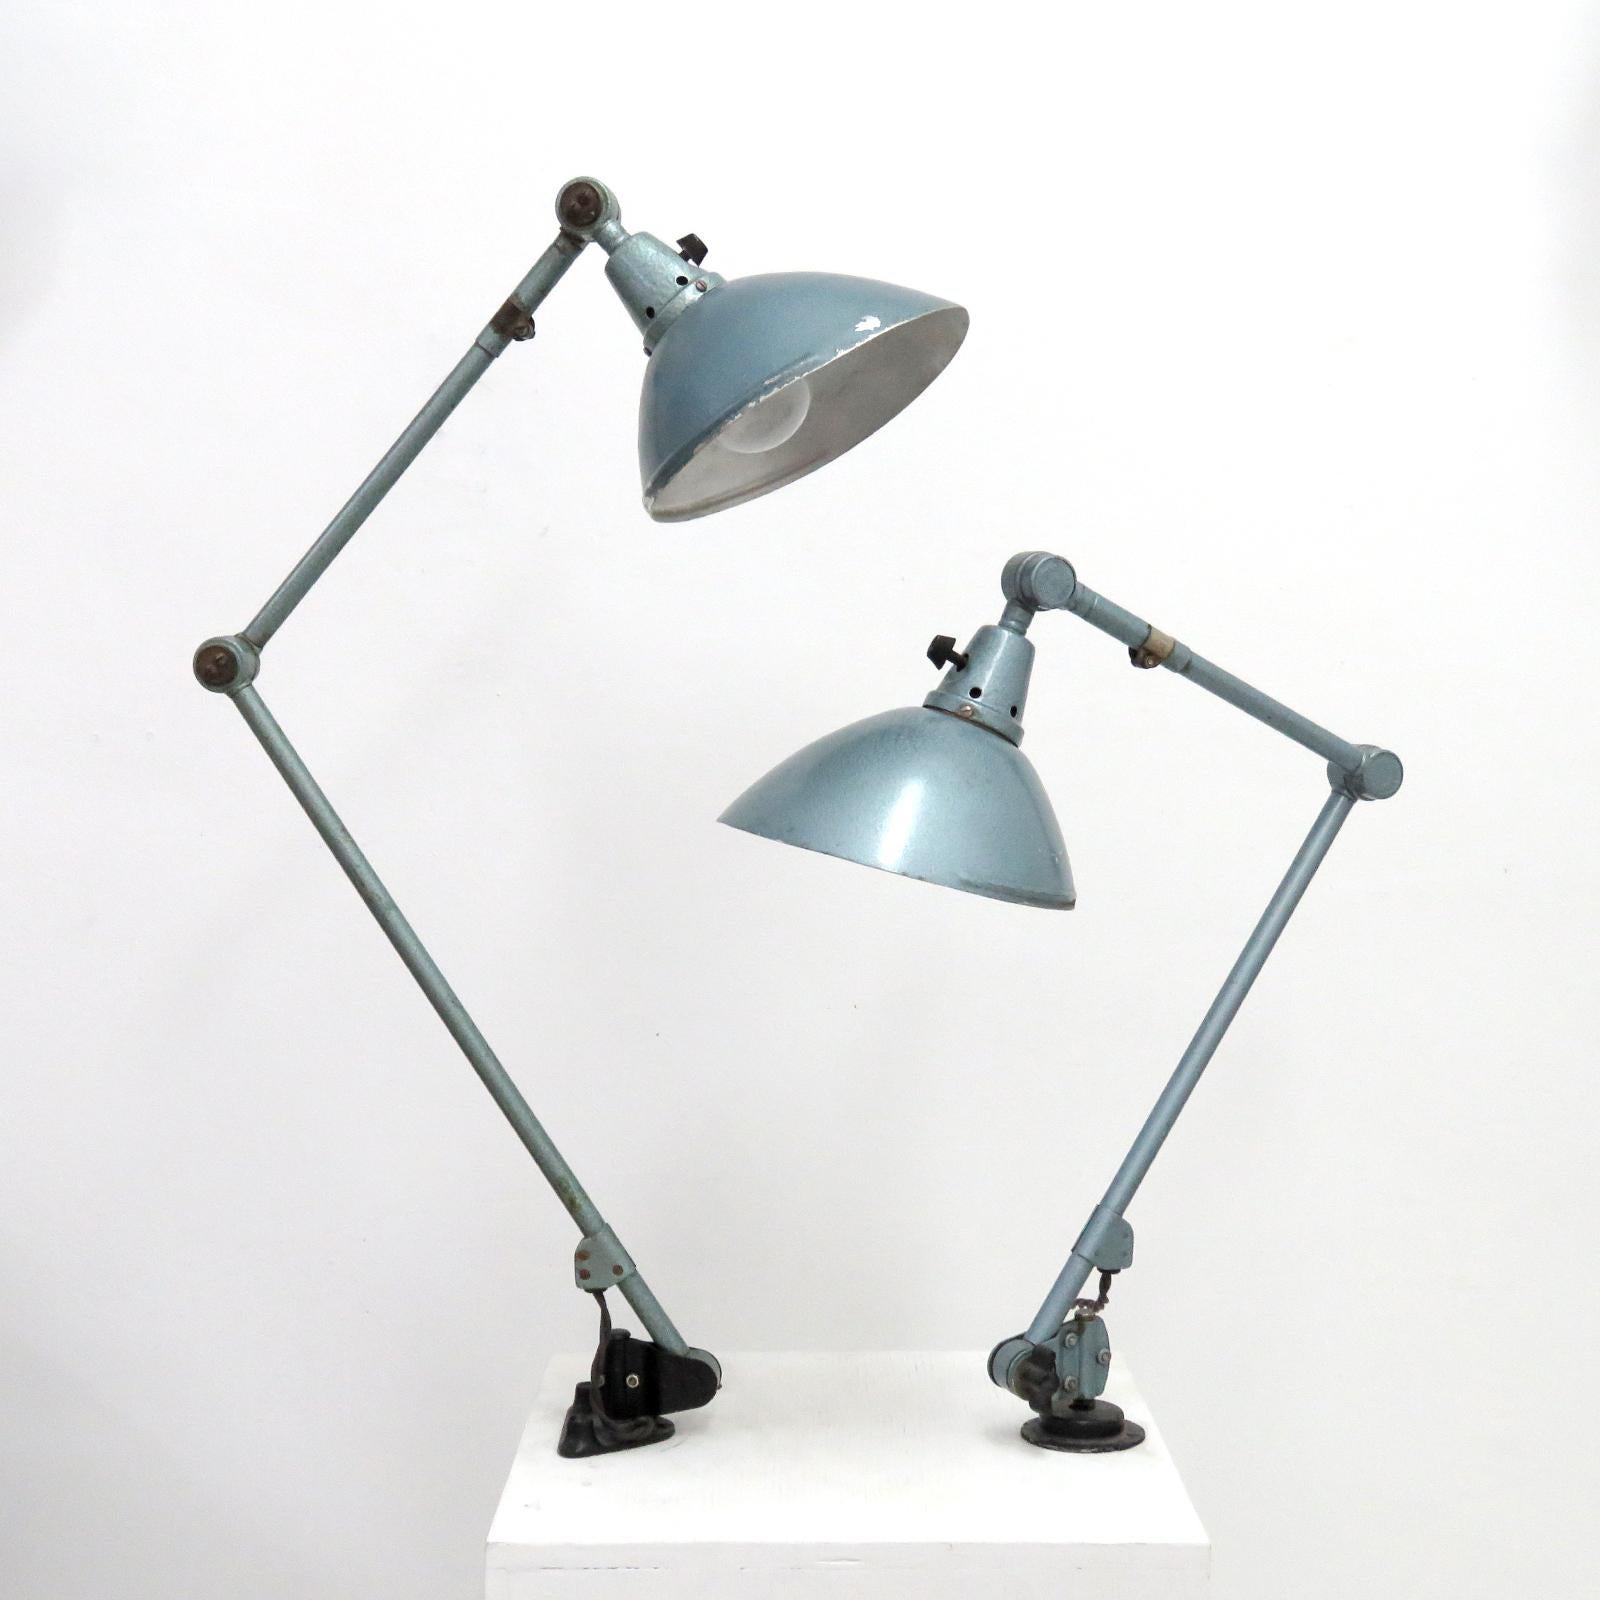 magnifiques lampes de bureau articulées des années 1920 par Curt Fischer pour Midgard en finition martelée gris-vert d'origine avec interrupteur marche/arrêt sur l'abat-jour, longueur des bras de la plus petite lampe 18